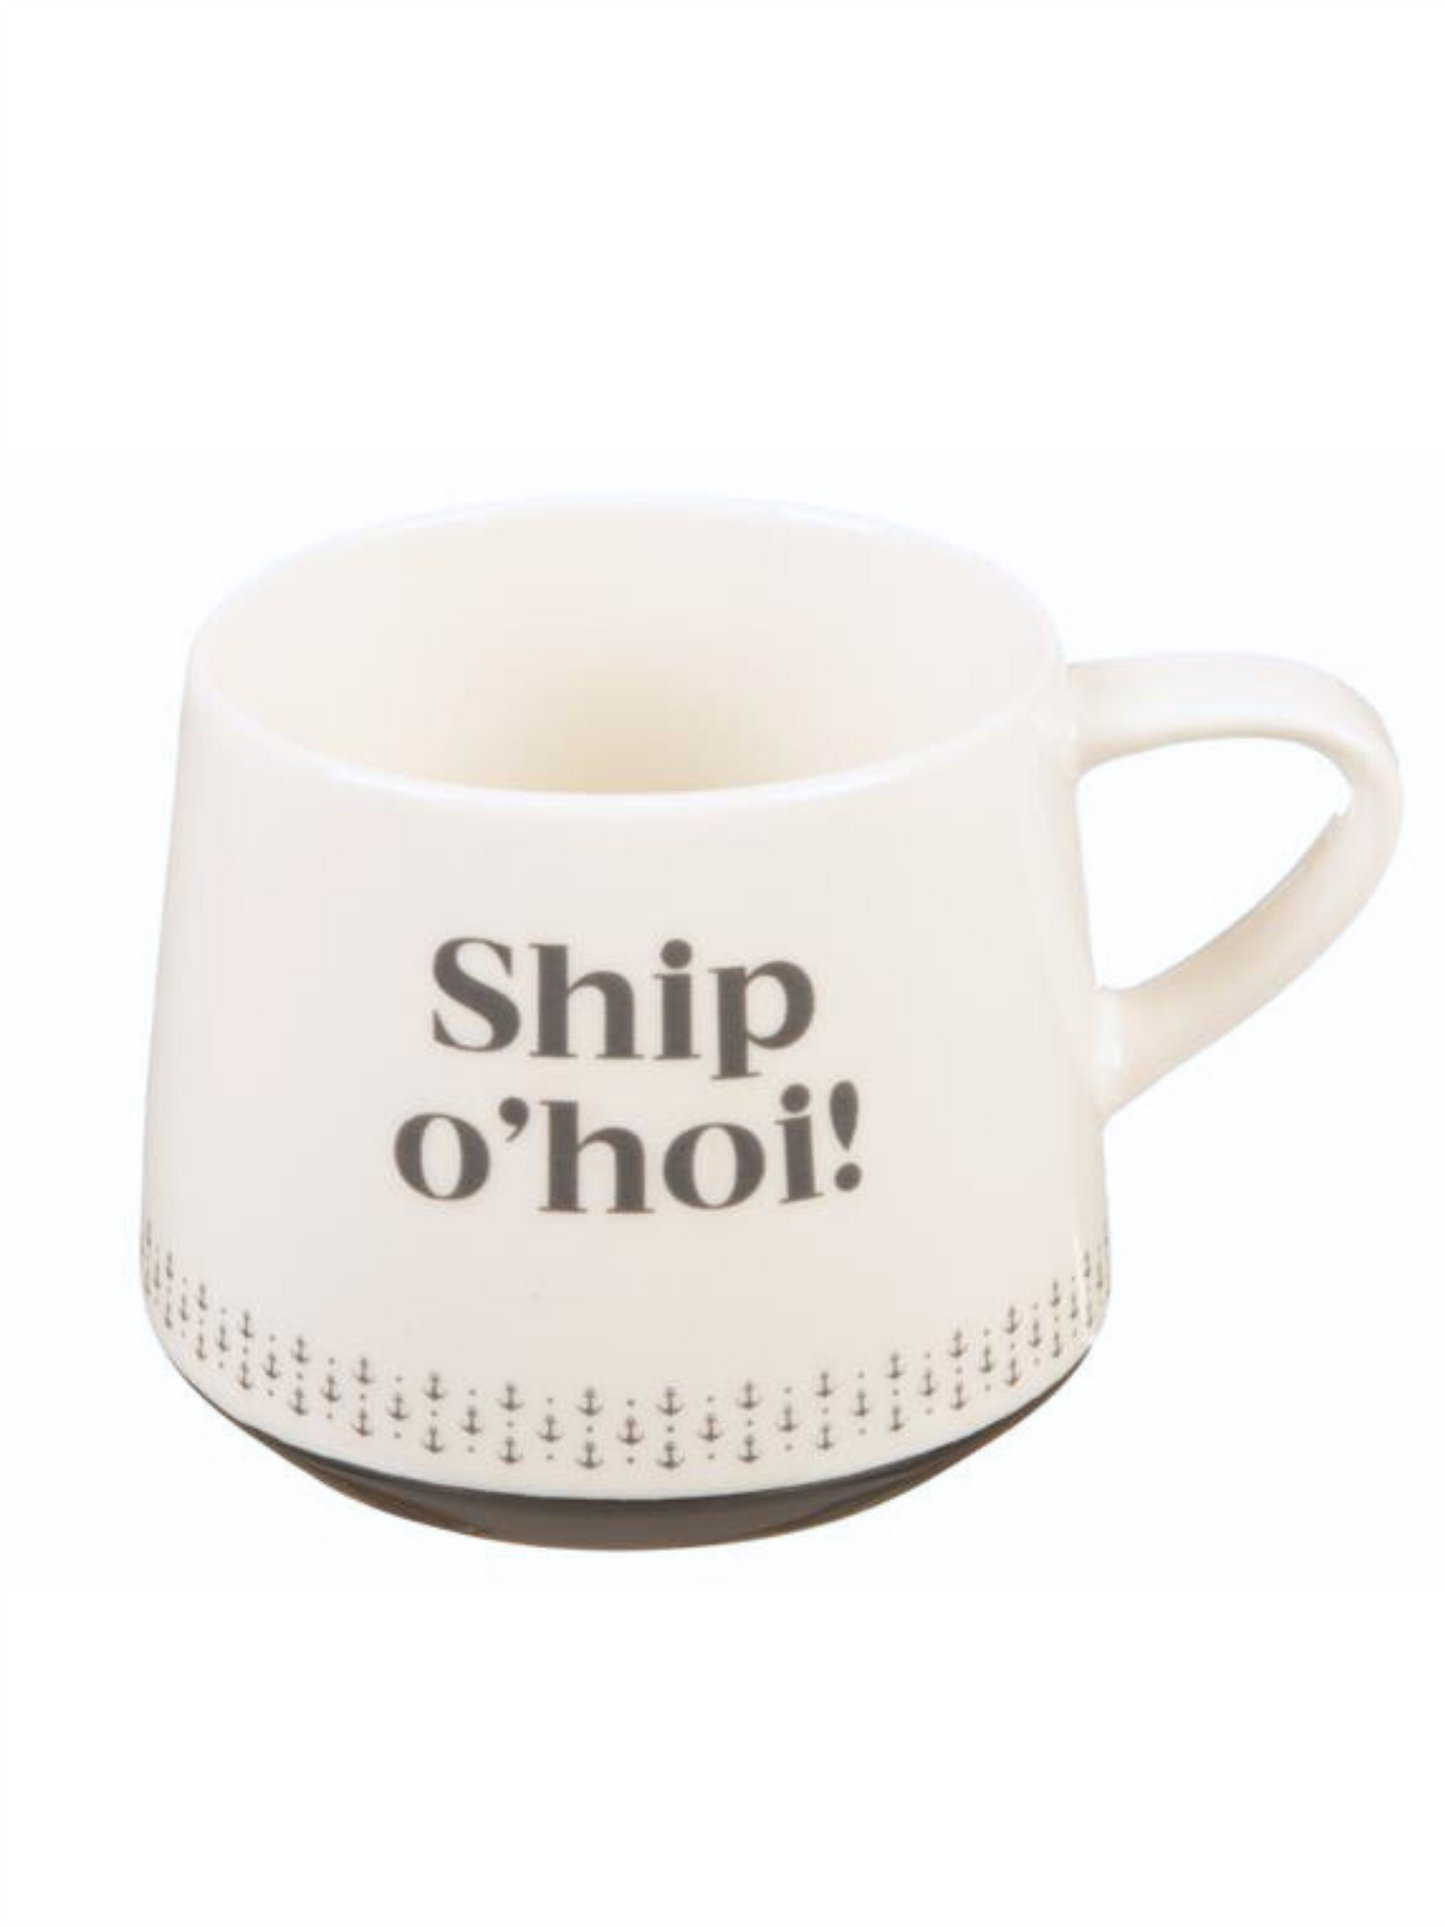 Krus "Ship o'hoi!" - Hvit